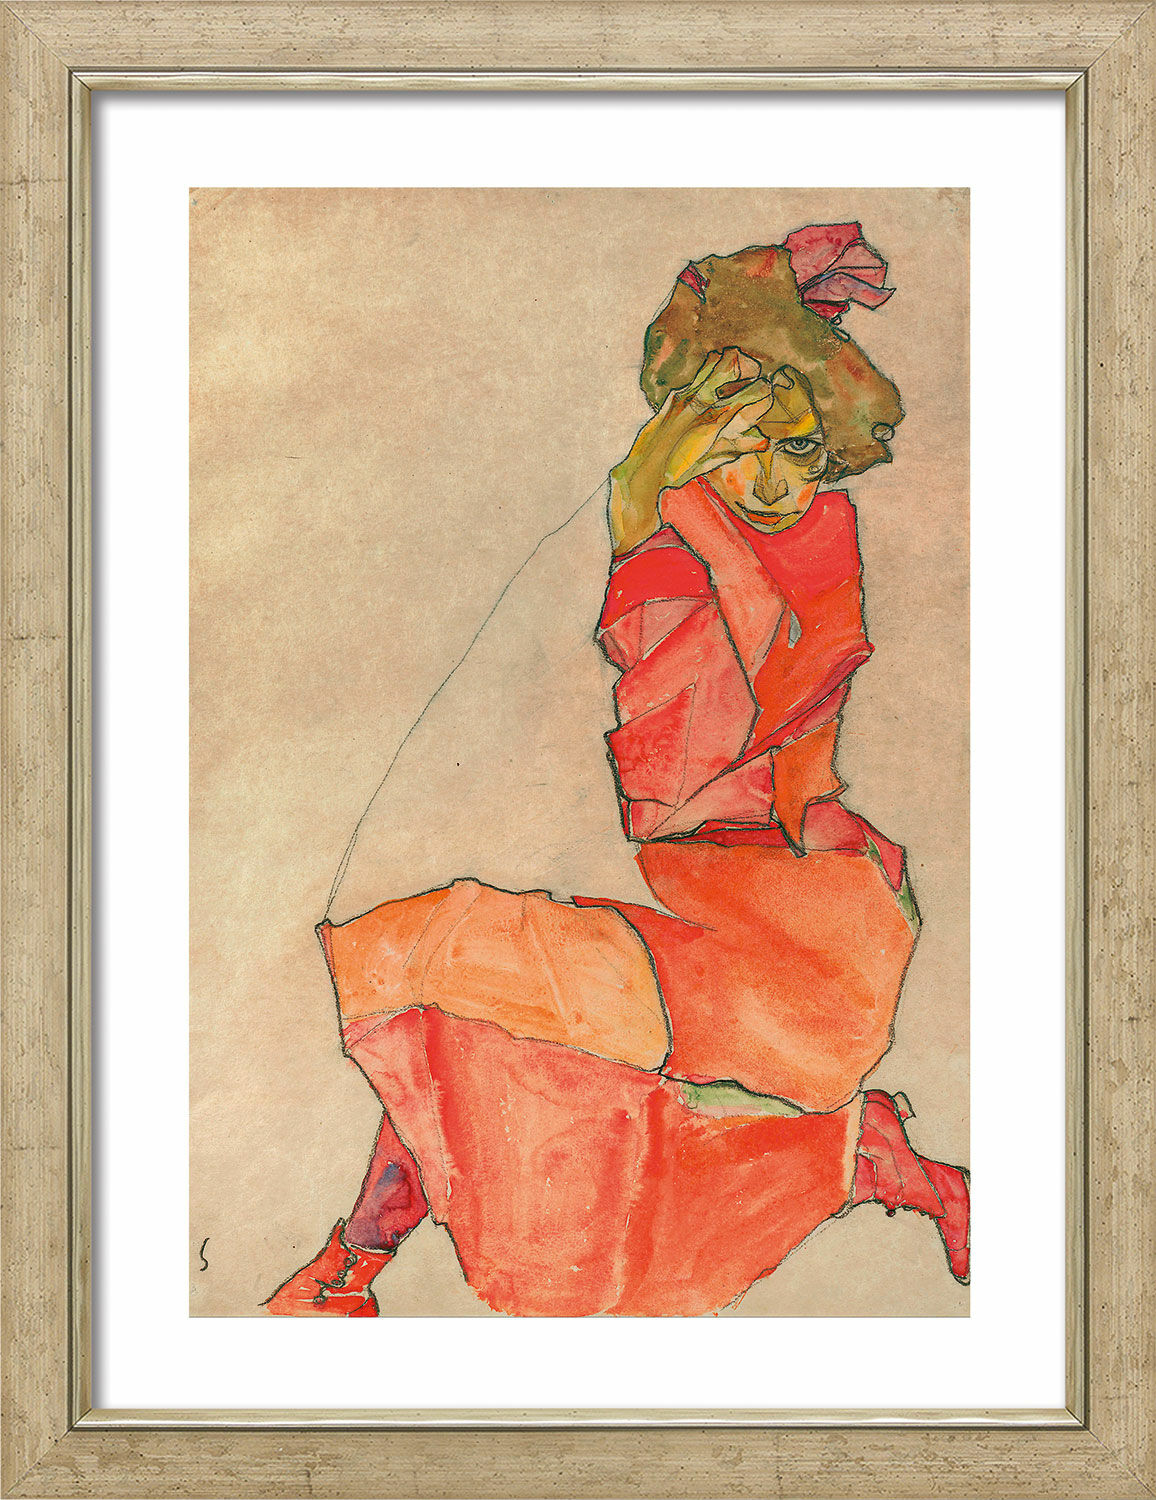 Beeld "Knielende dame in oranjerode jurk" (1910), ingelijst von Egon Schiele